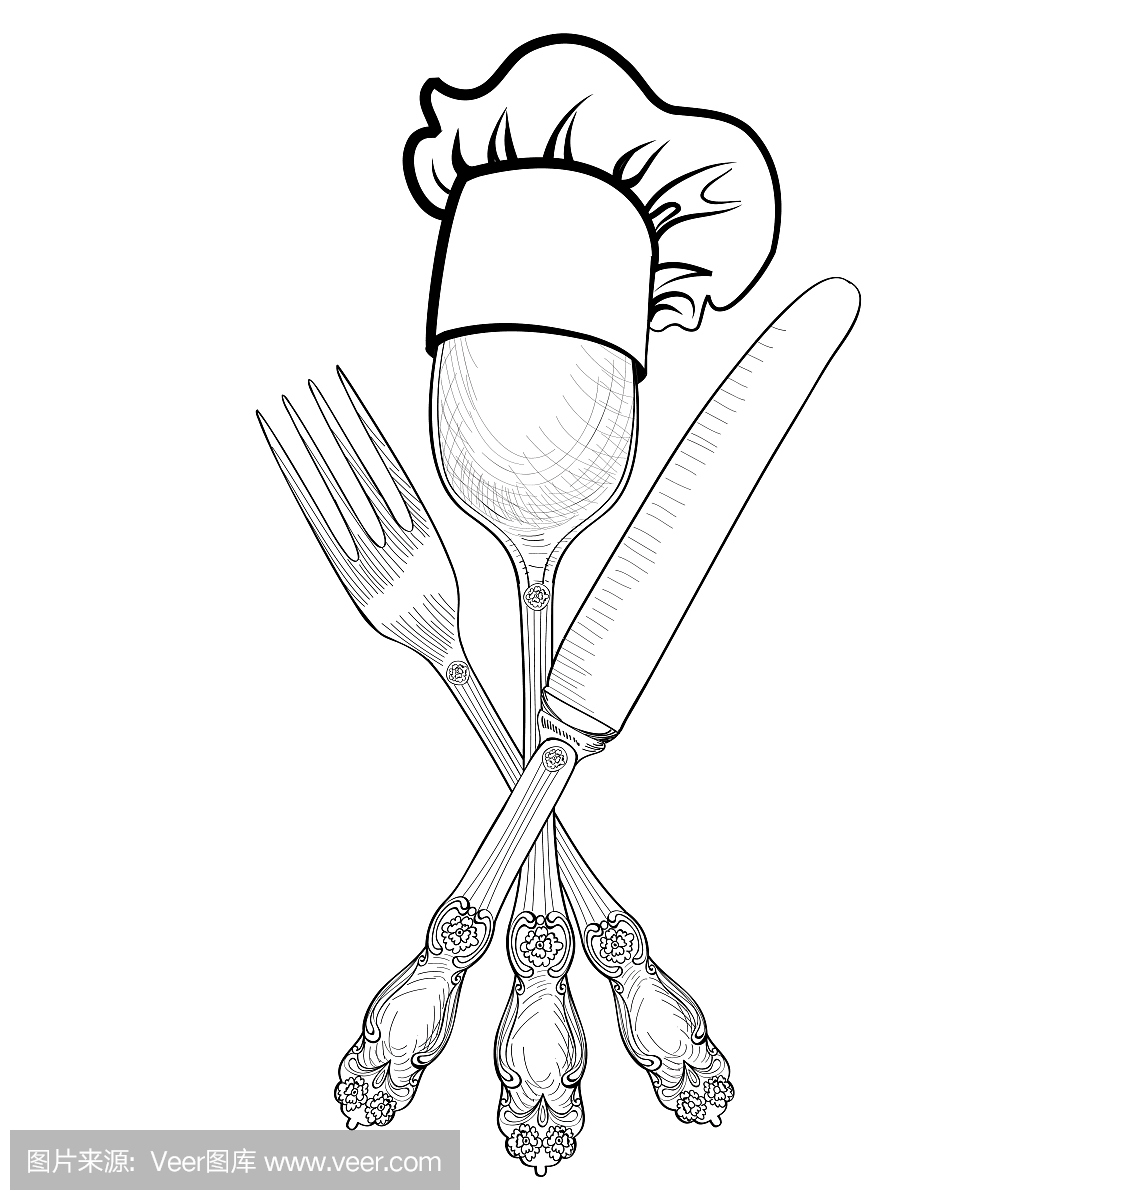 把帽子放在勺子,叉子,刀子上。餐厅符号厨师厨